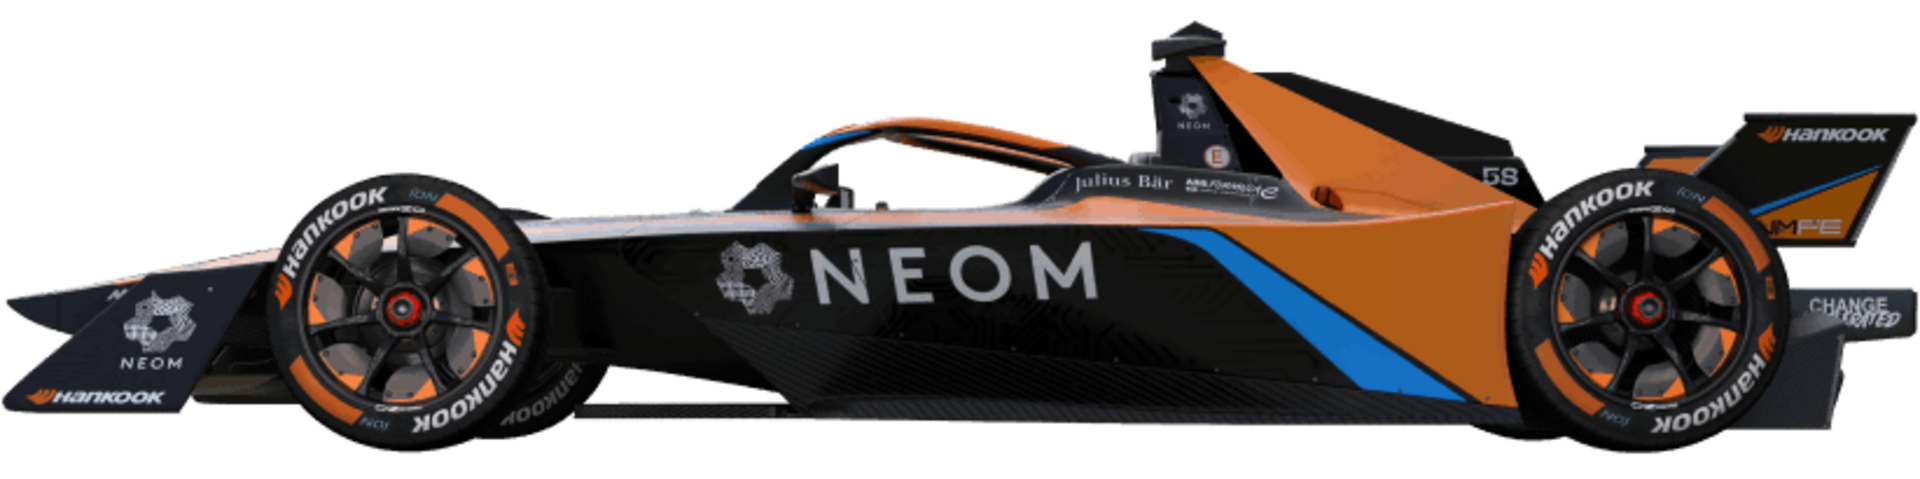 Neom McLaren Formula E Team